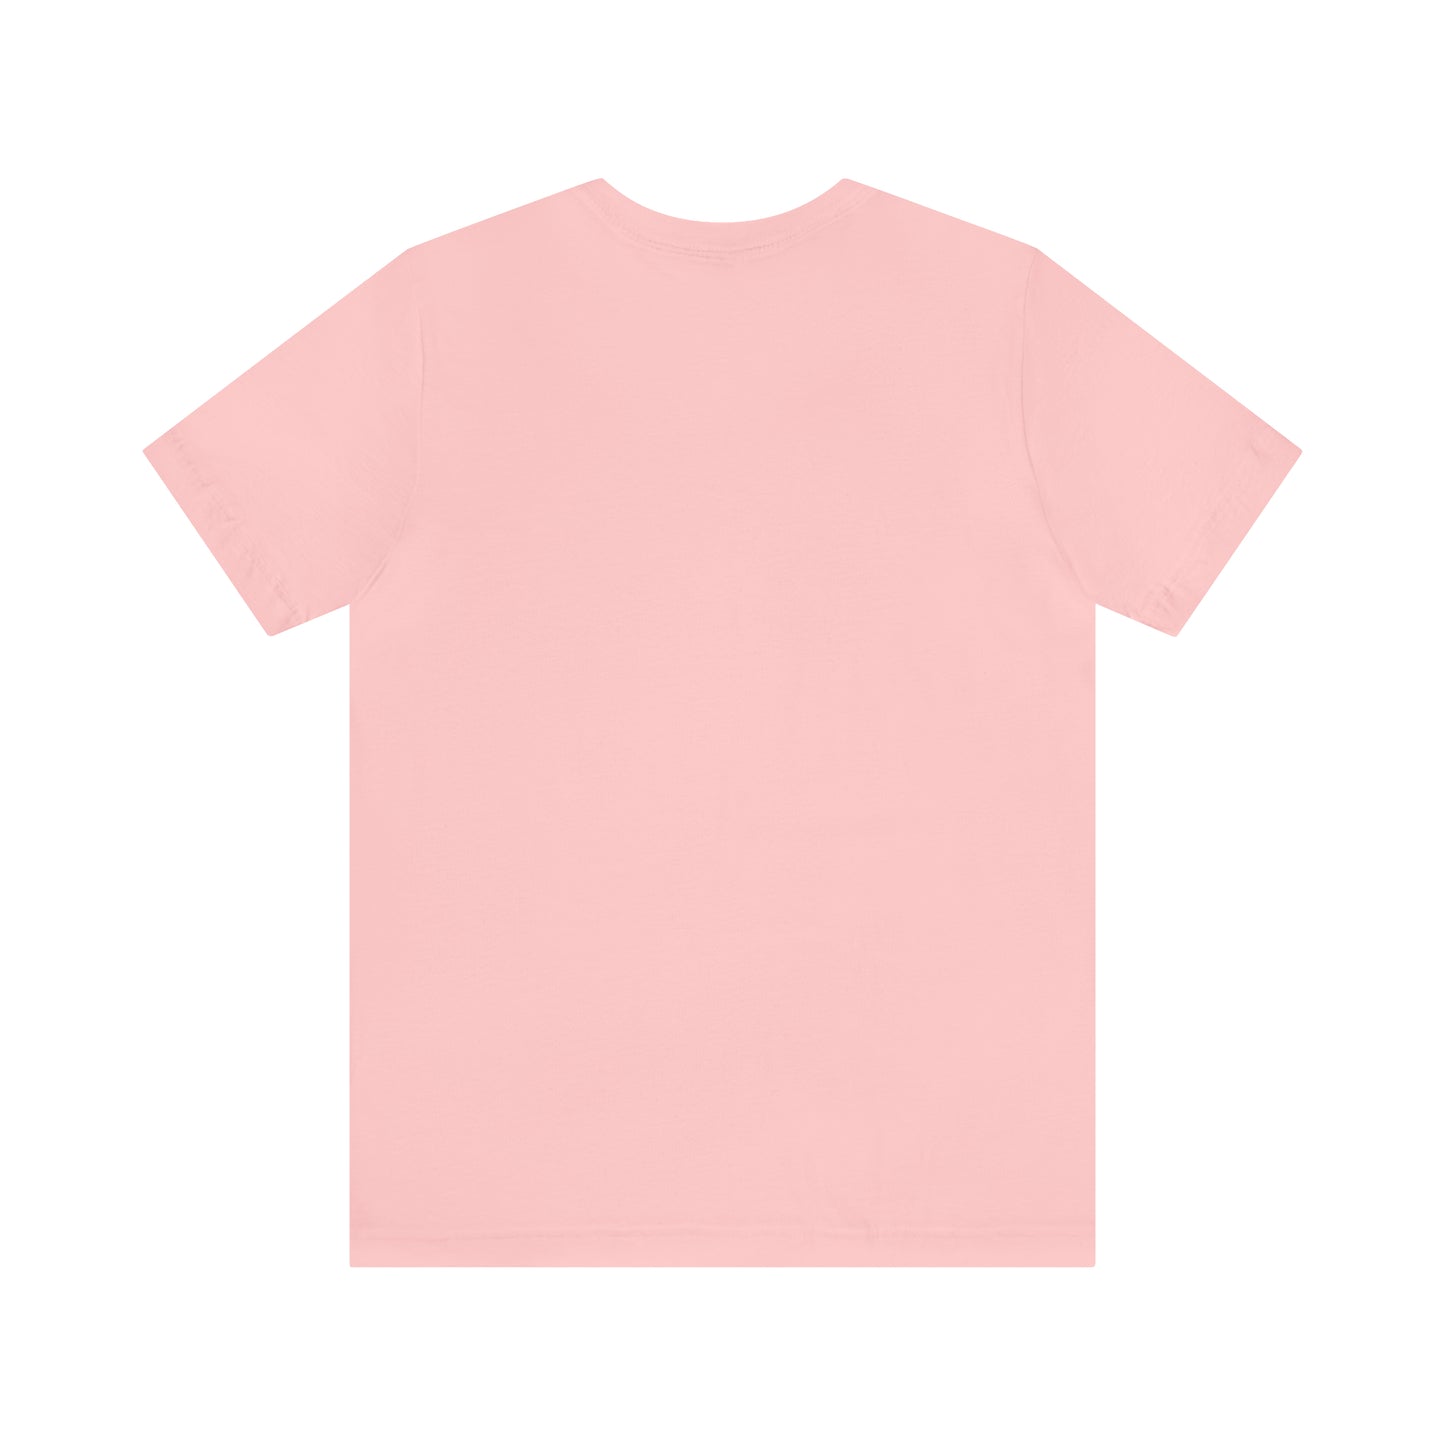 Camiseta rosa ataúd